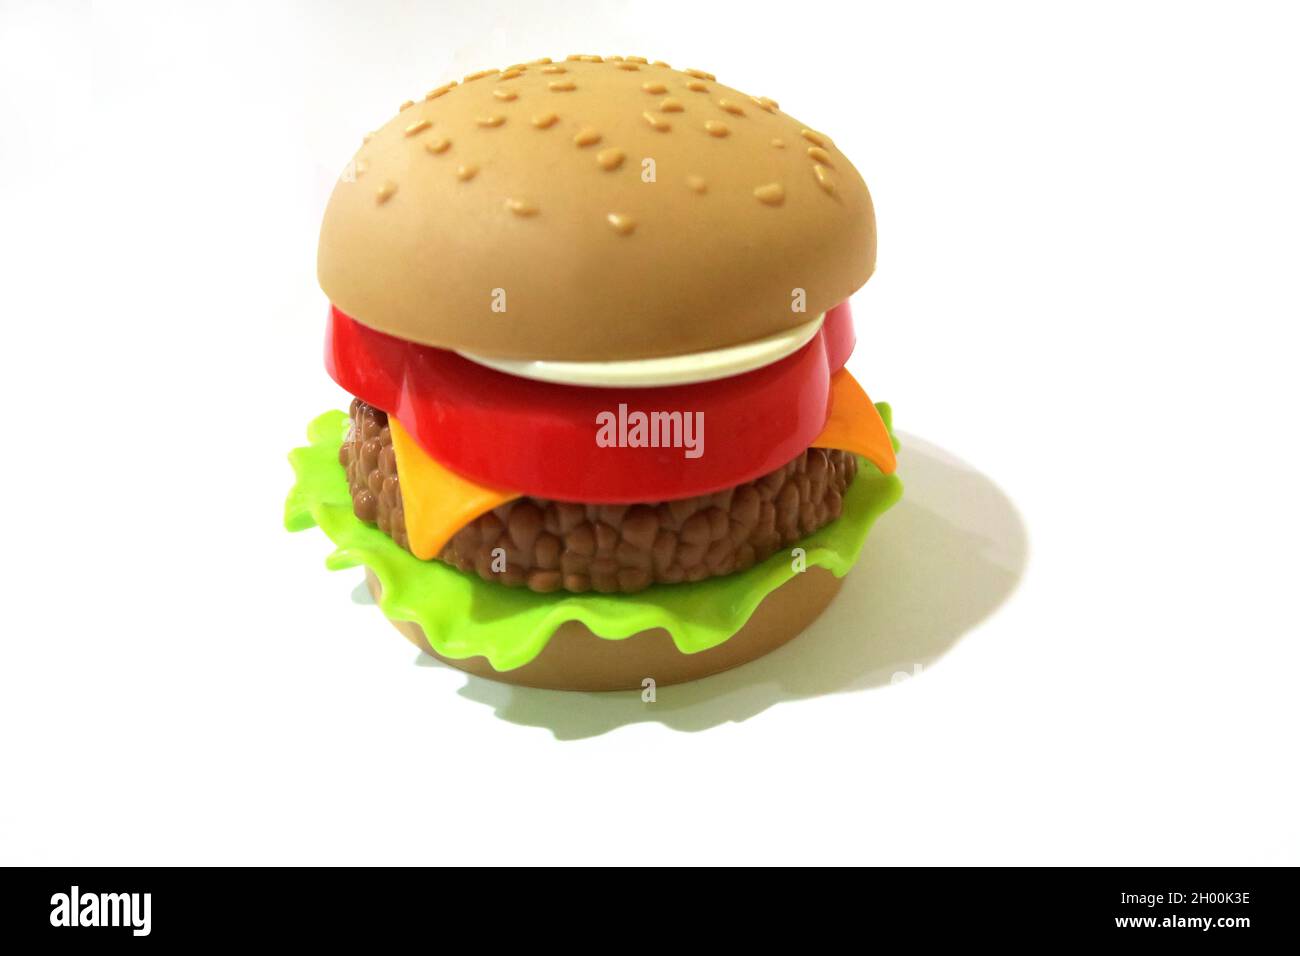 Hamburger Di Plastica Immagini e Fotos Stock - Alamy